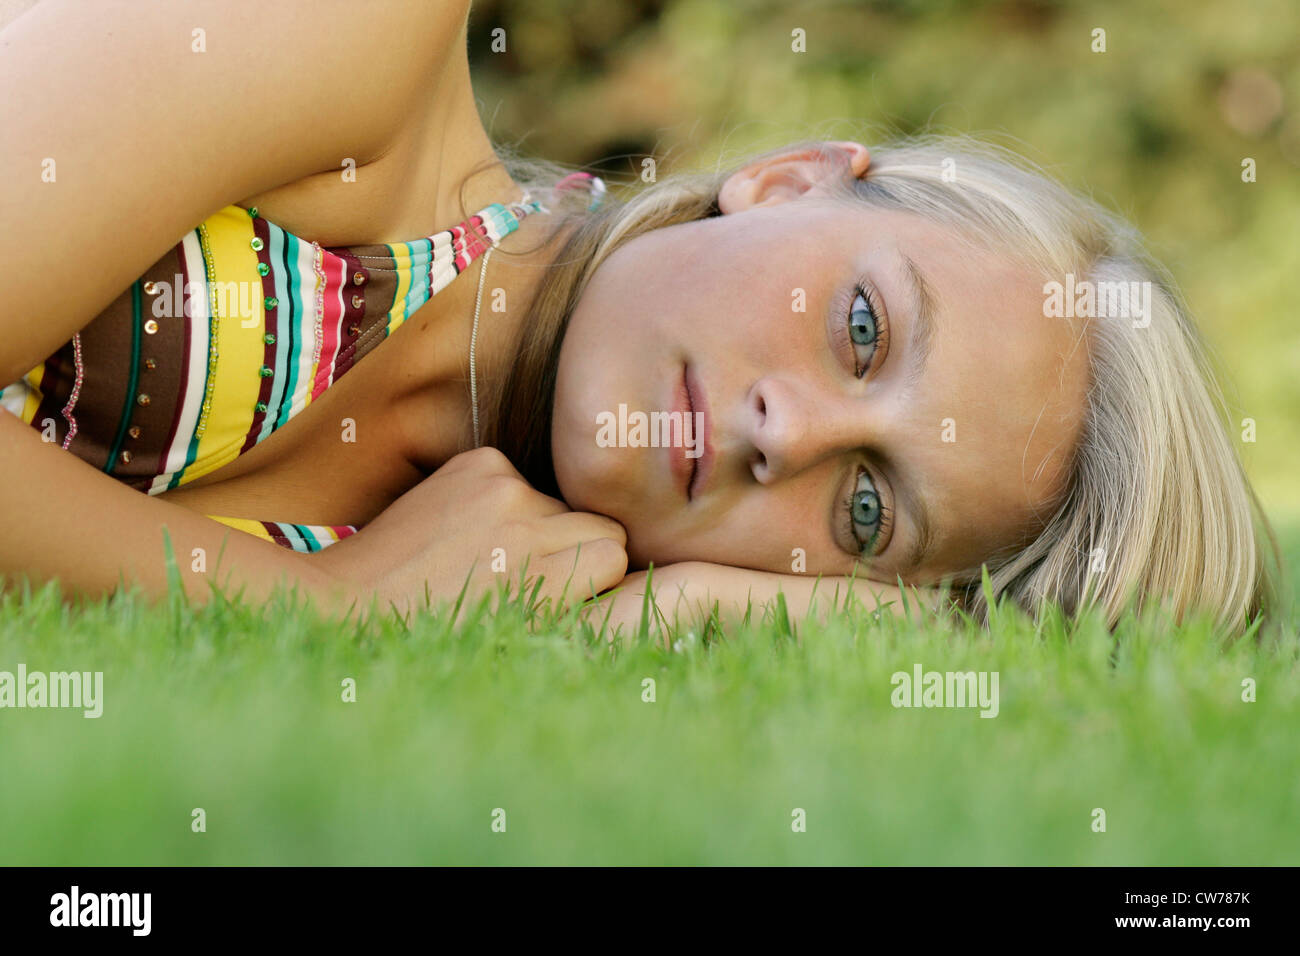 young girl in bikini, lying on a meadow Stock Photo - Alamy